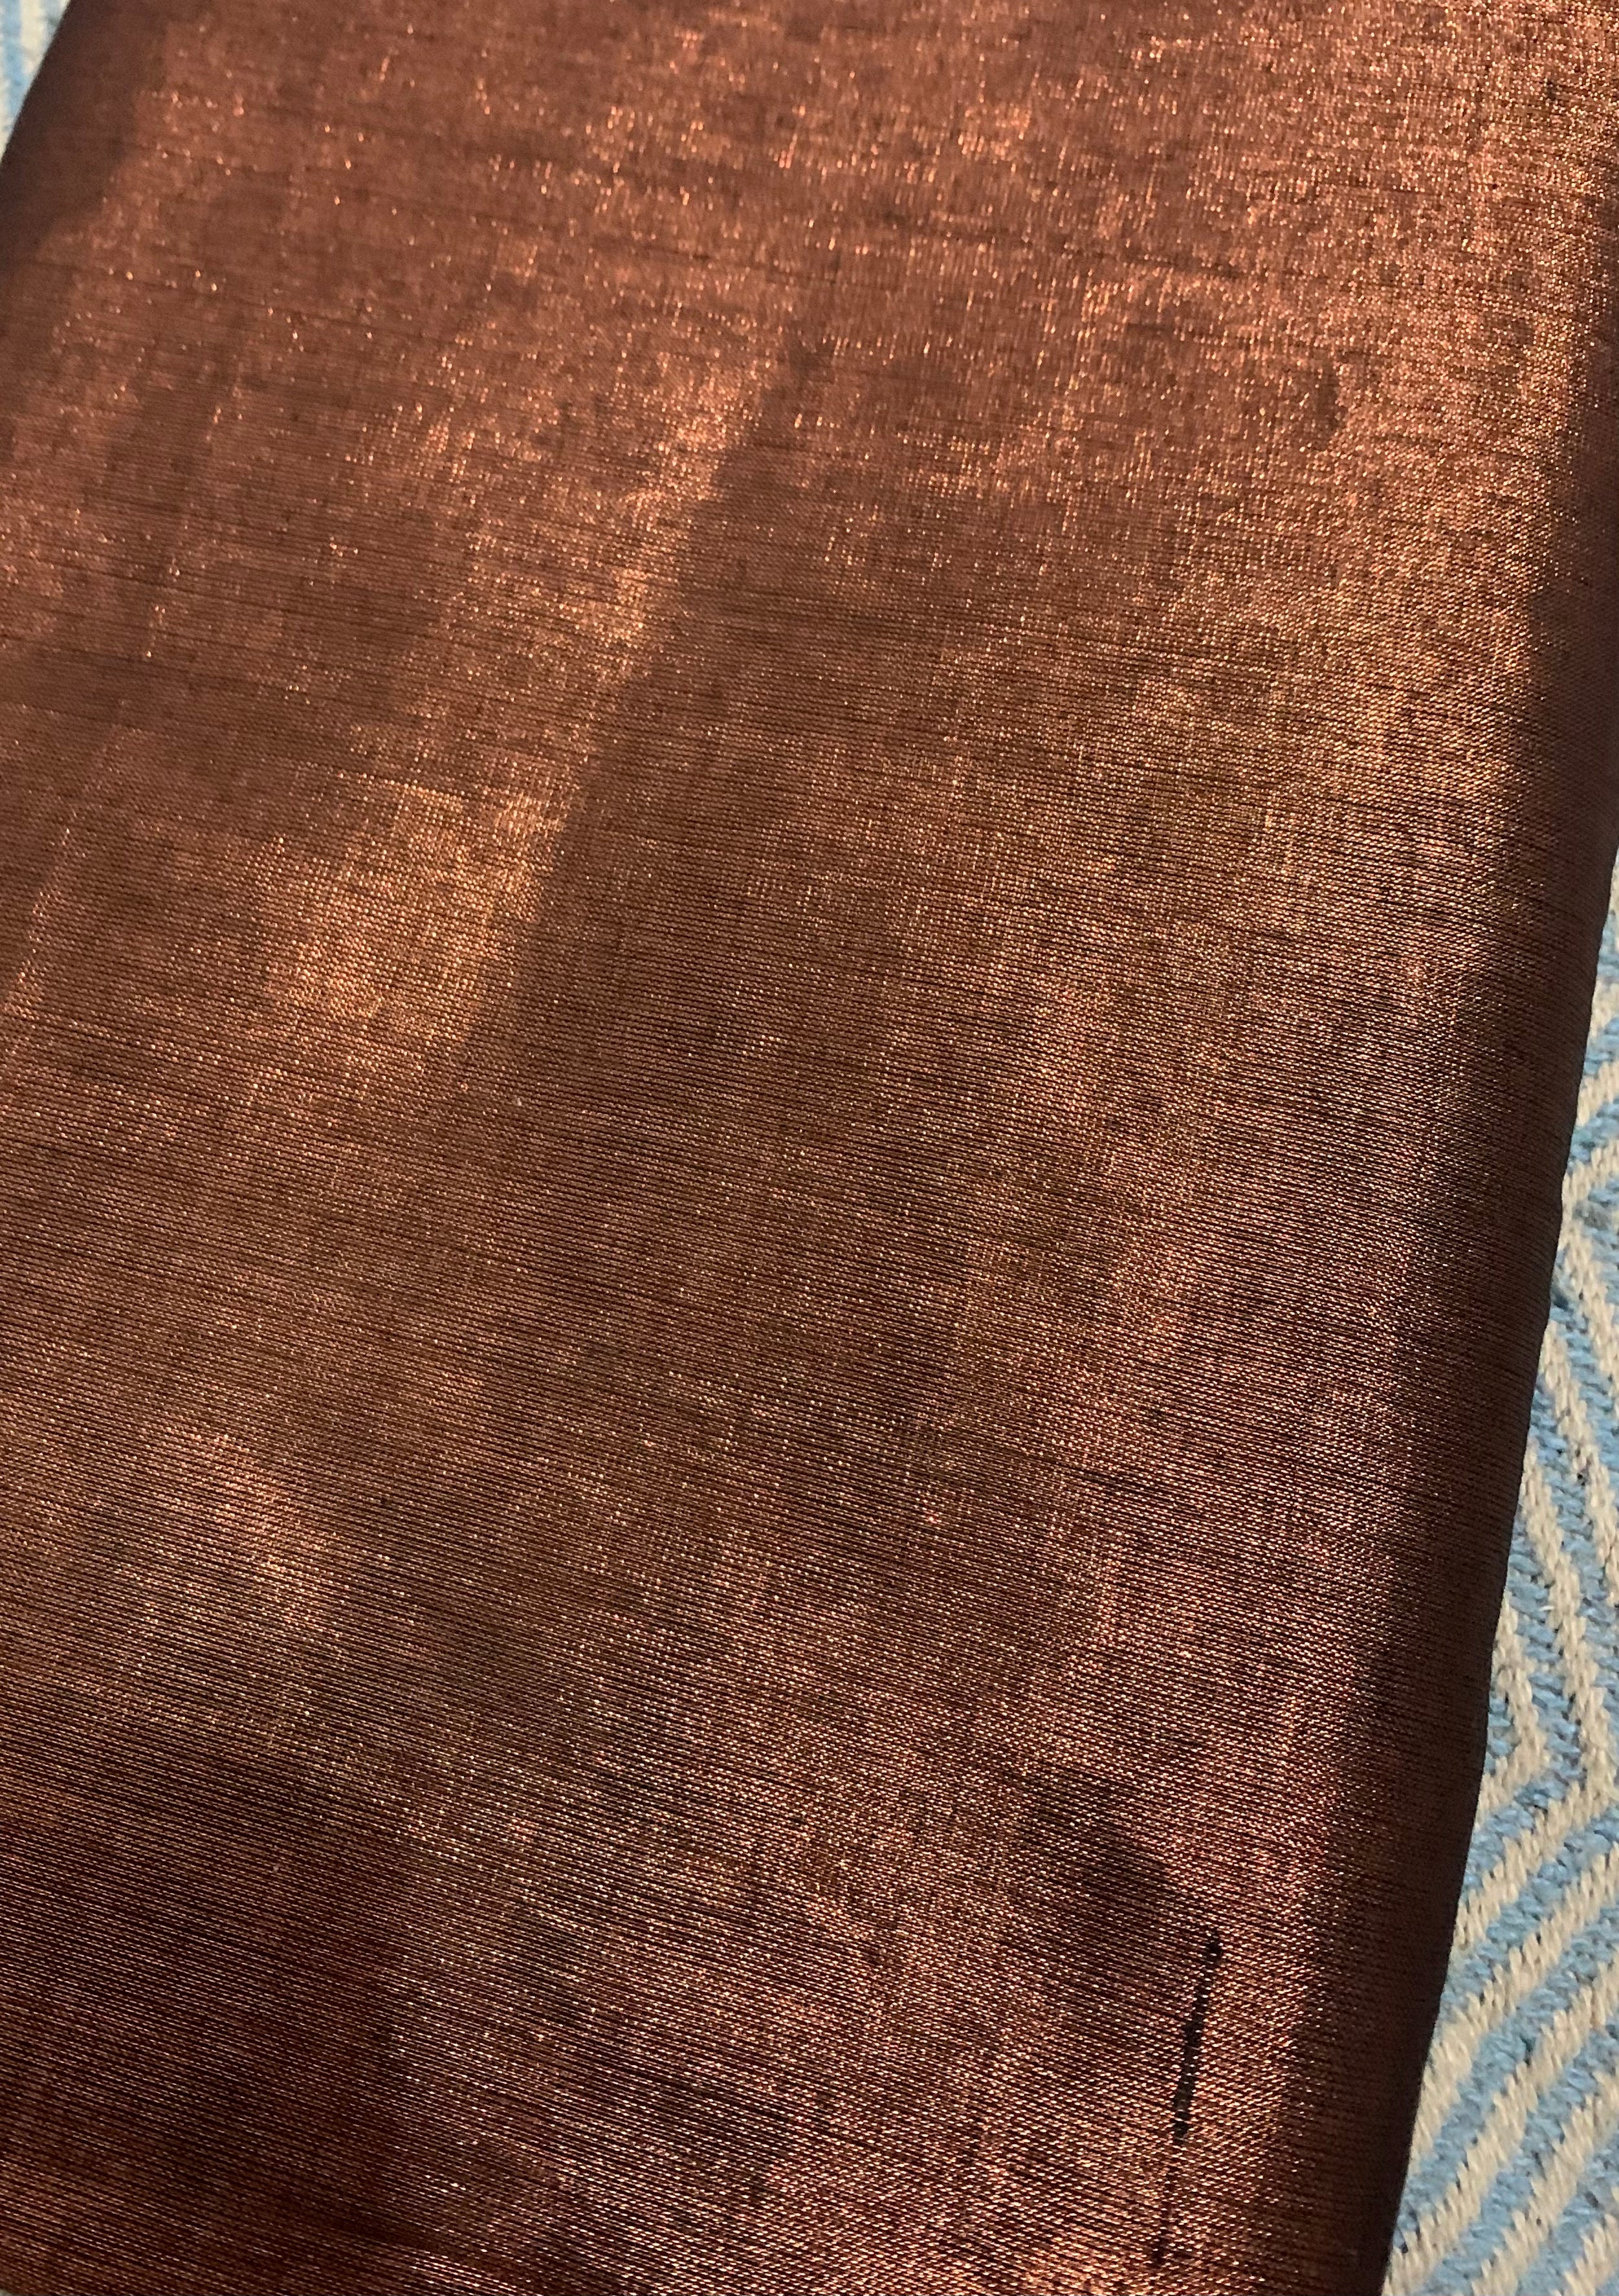 Handwoven copper tissue fabric